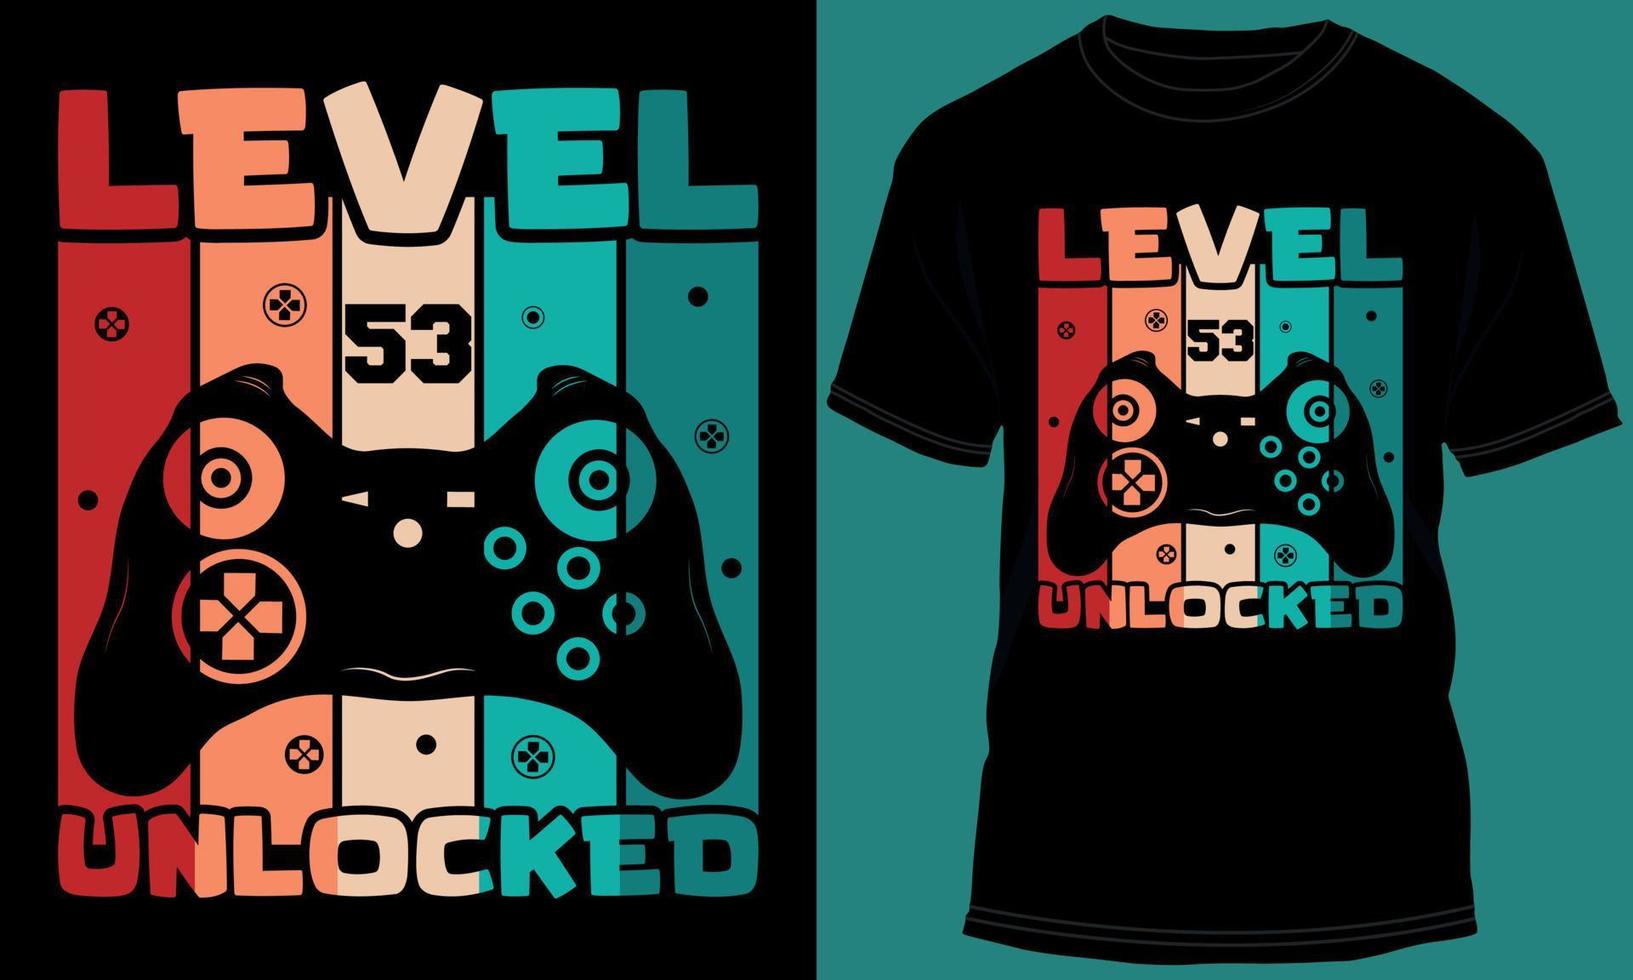 jogador ou jogos nível 53 desbloqueado camiseta Projeto vetor